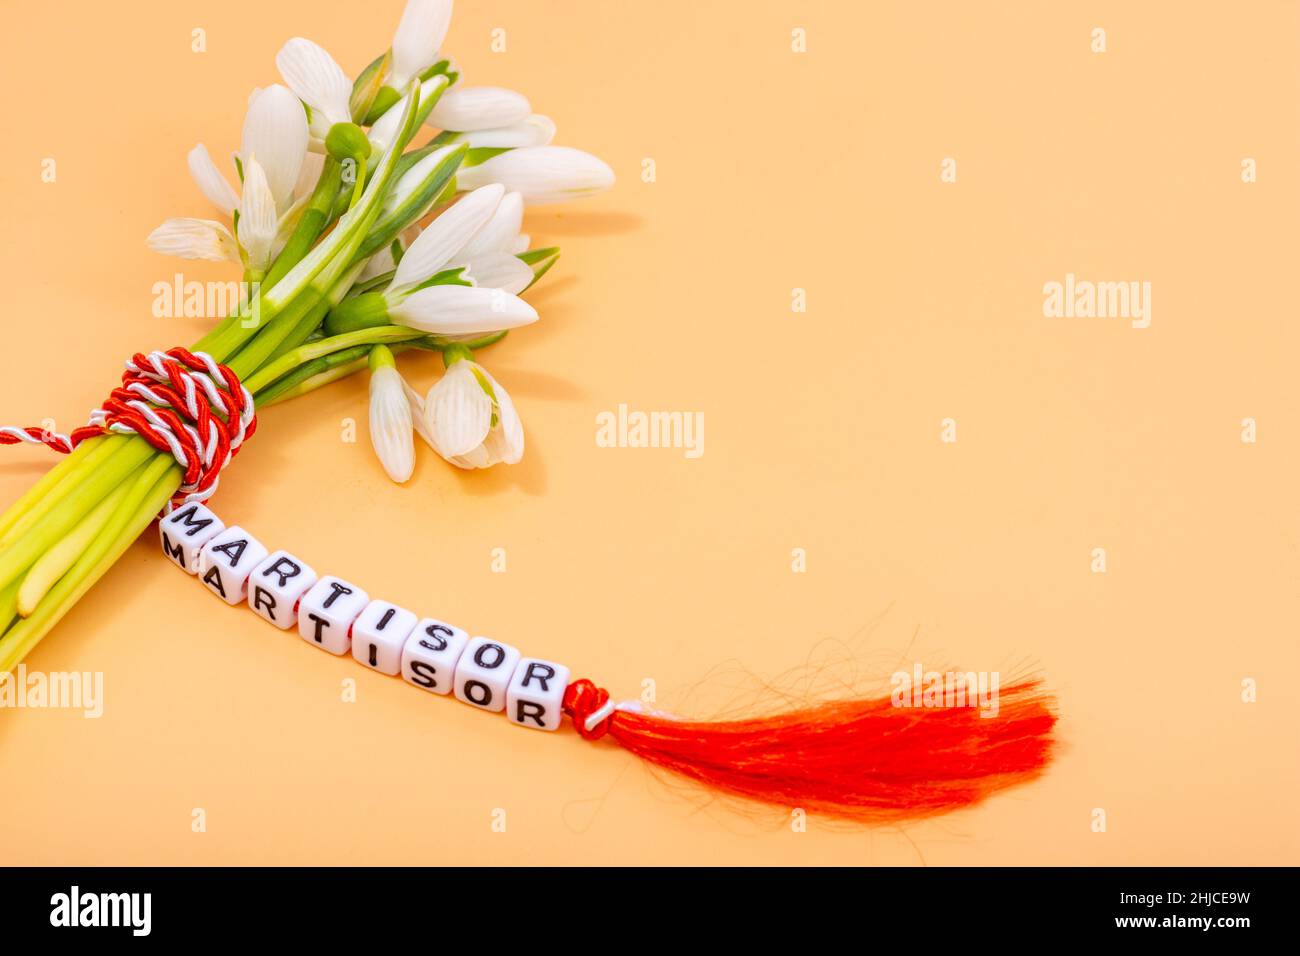 bouquet di gocce di neve legato con cordoncino intrecciato rosso e bianco, martistore rumeno 1st di tradizione marmotana Foto Stock